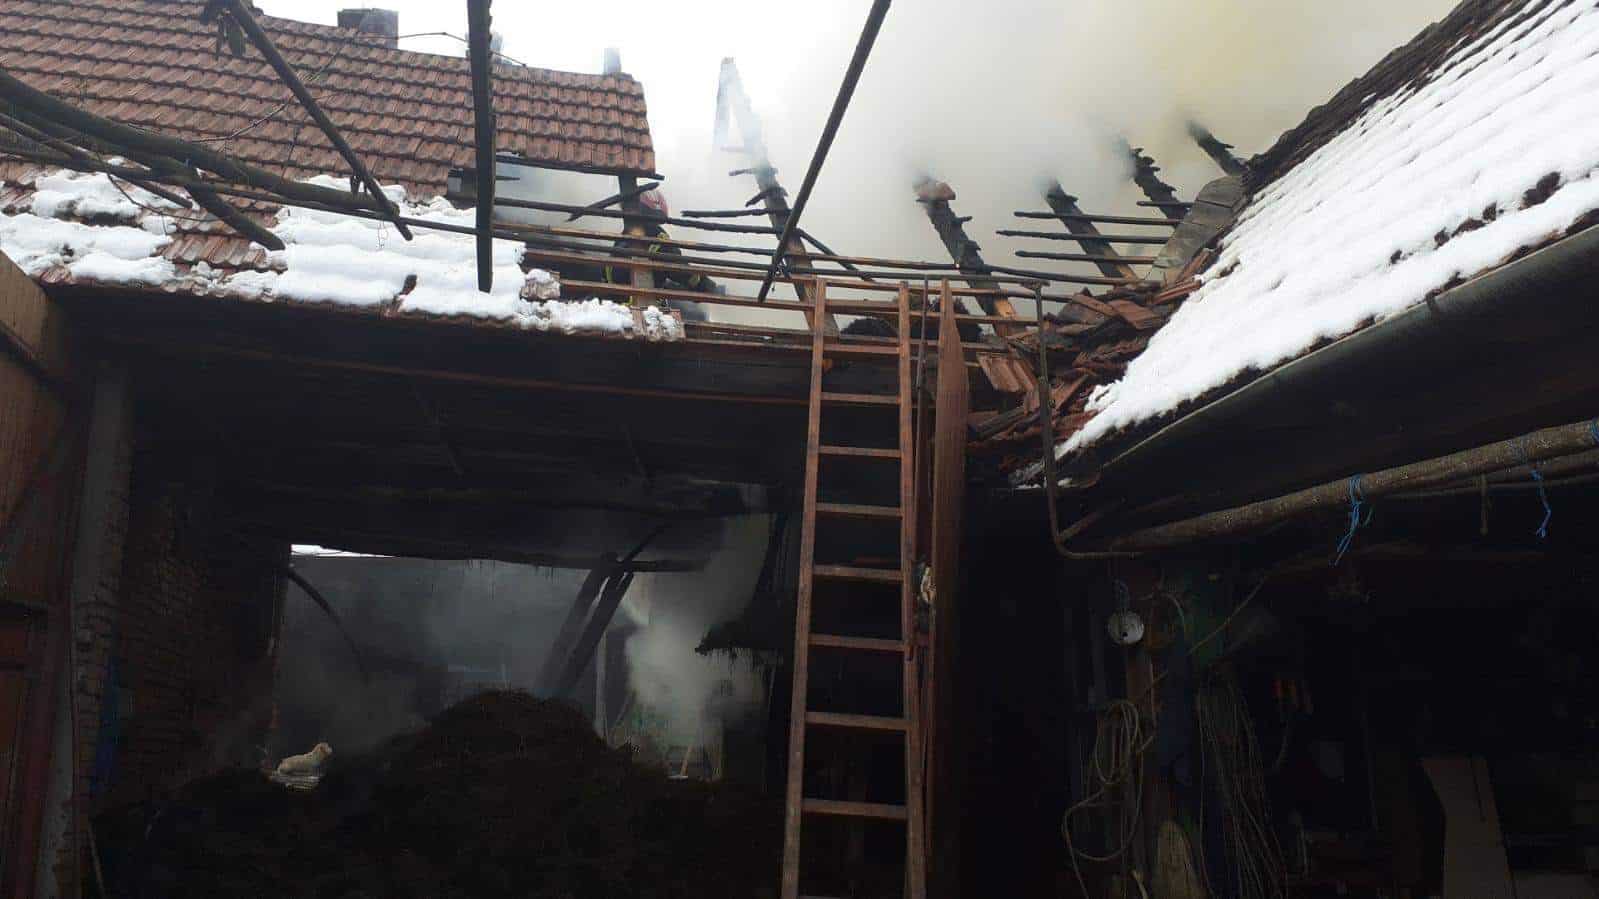 incendiu în localitatea bradu - au fost mobilizate trei autospeciale de stingere și un echipaj smurd